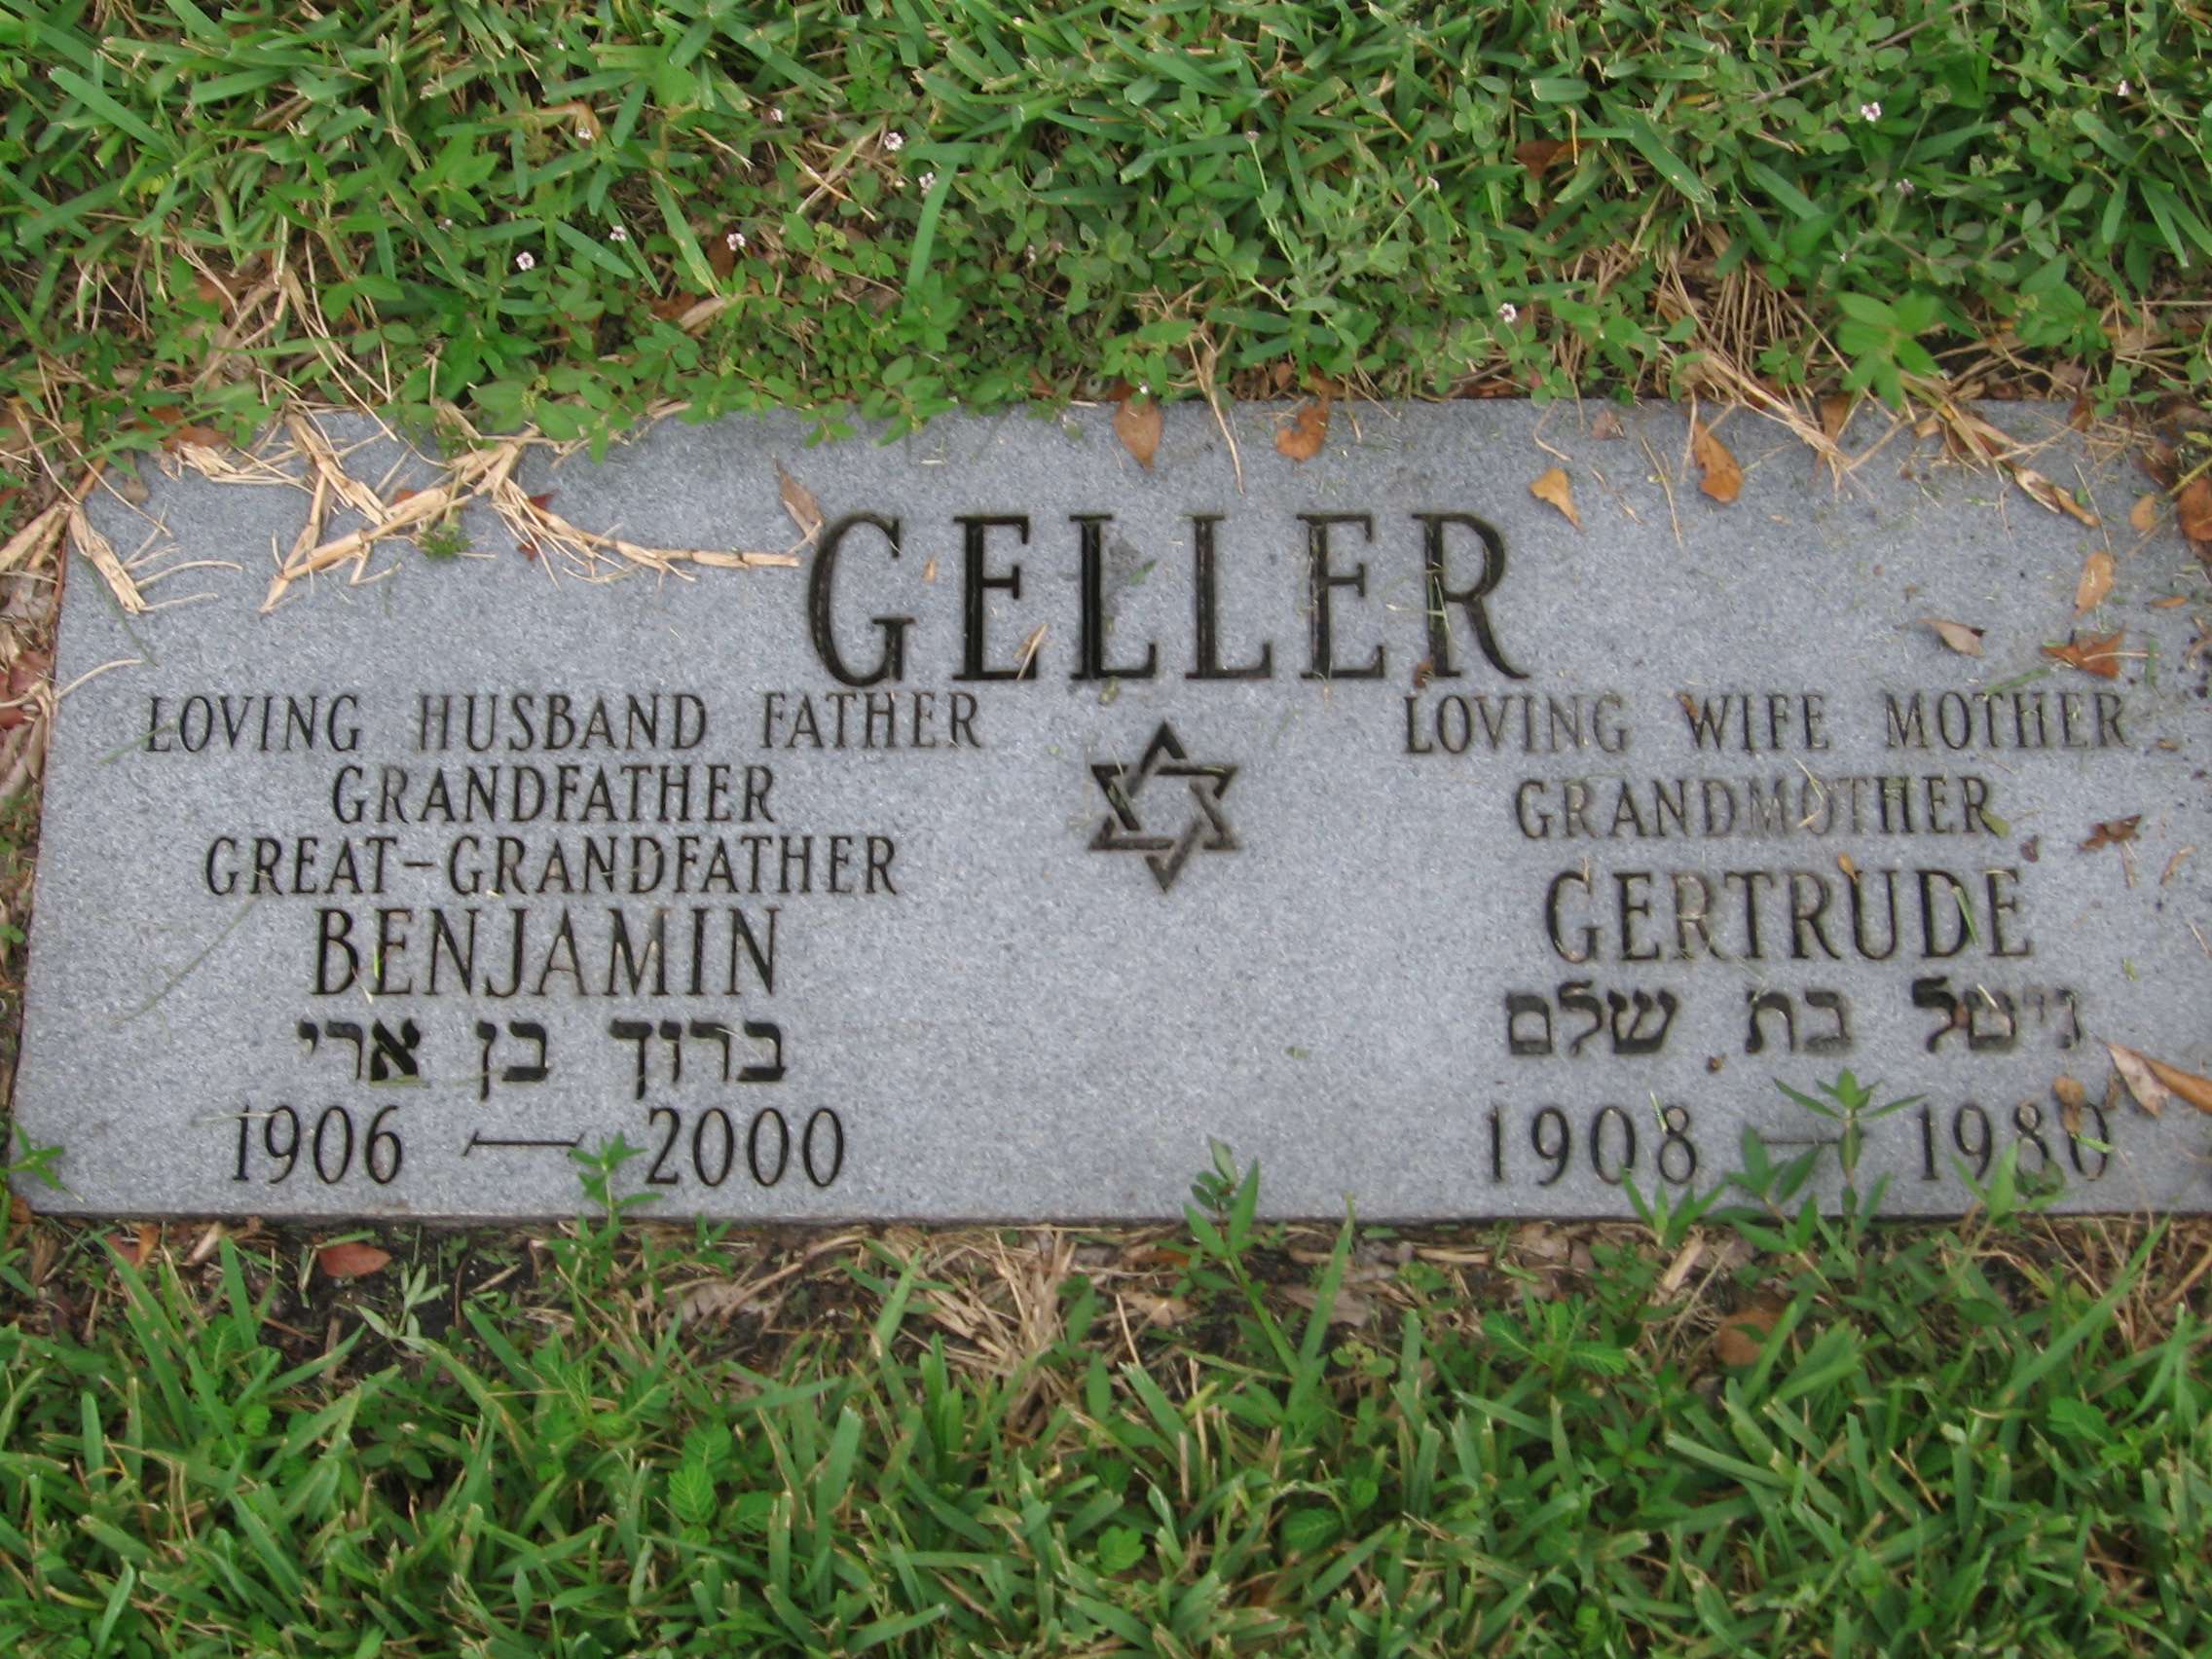 Gertrude Geller